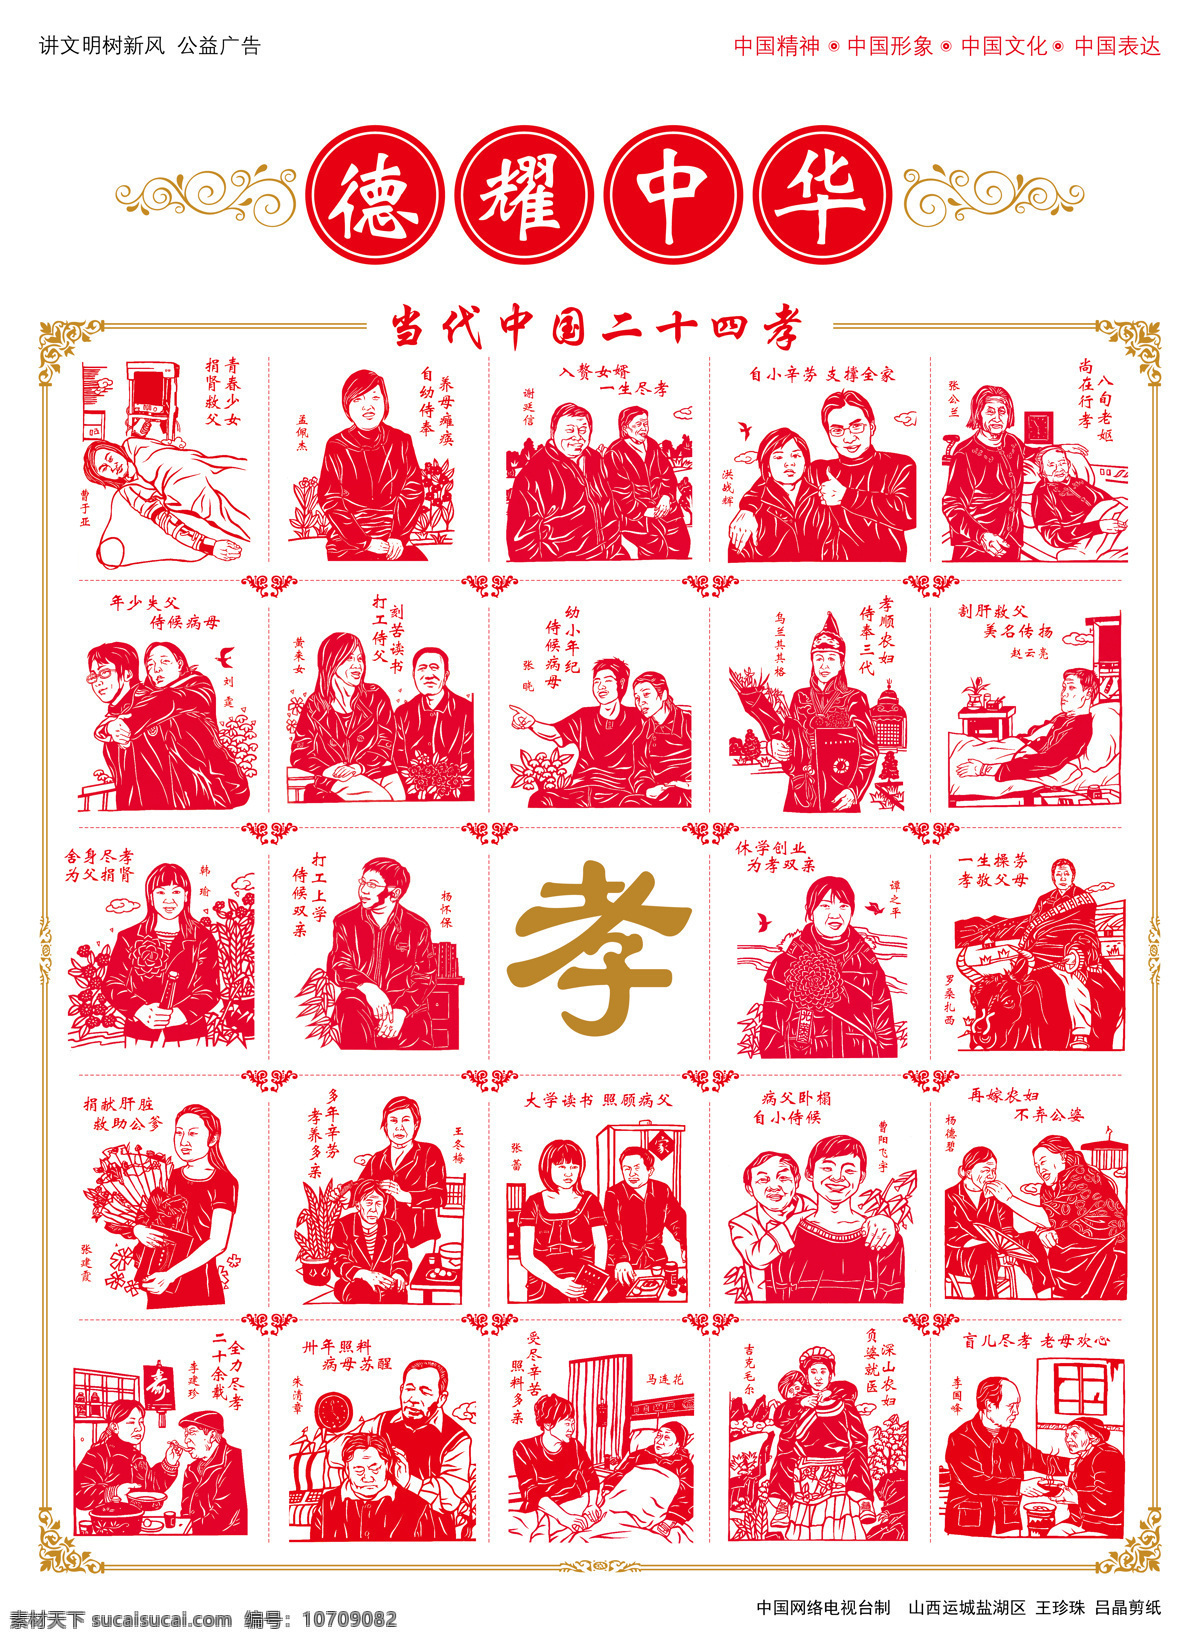 二十四孝 德耀中华 二十四 公益广告 红色 剪纸 名人 伟人 孝 传统文化 文化艺术